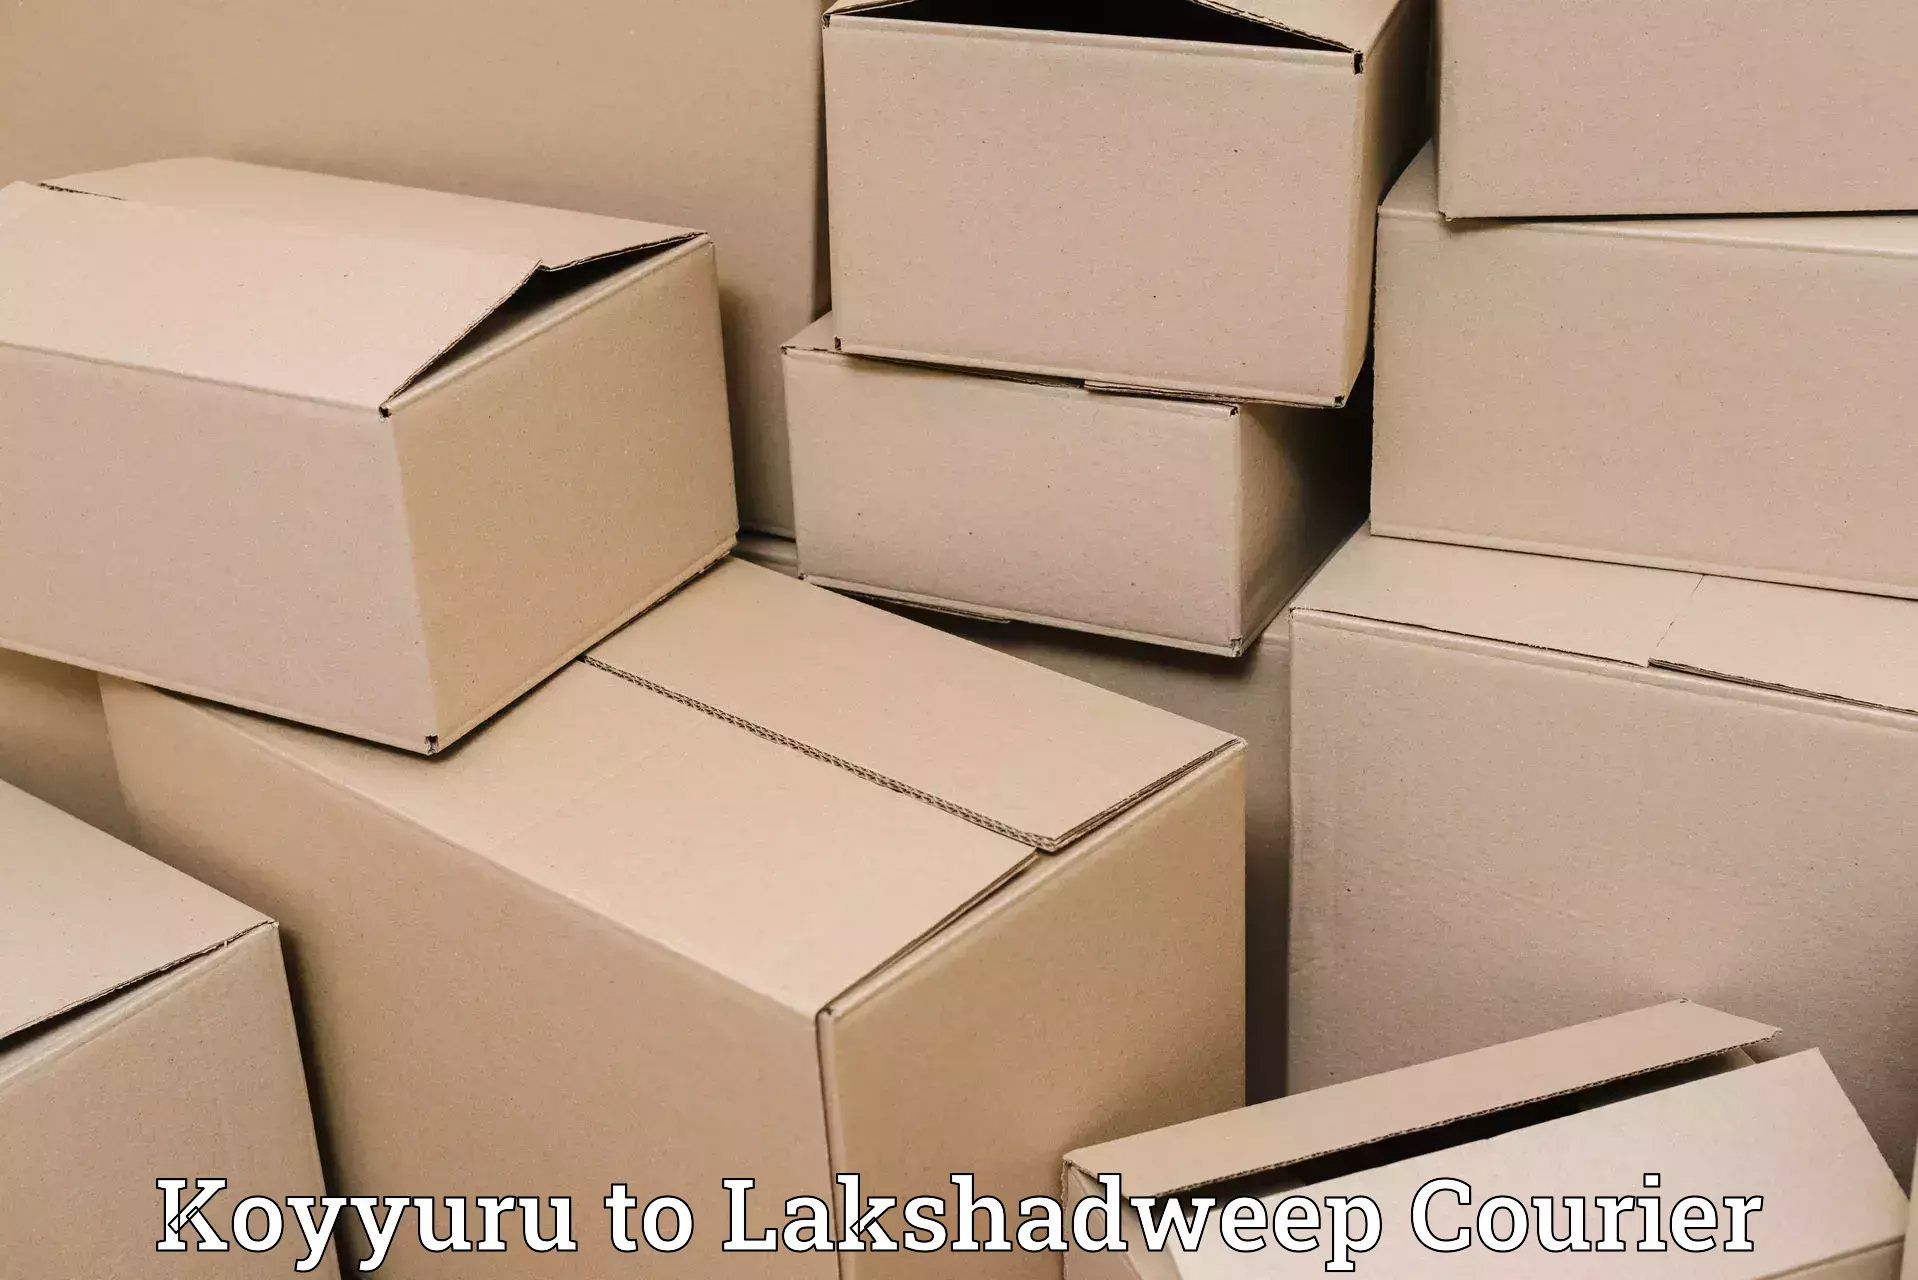 International shipping Koyyuru to Lakshadweep